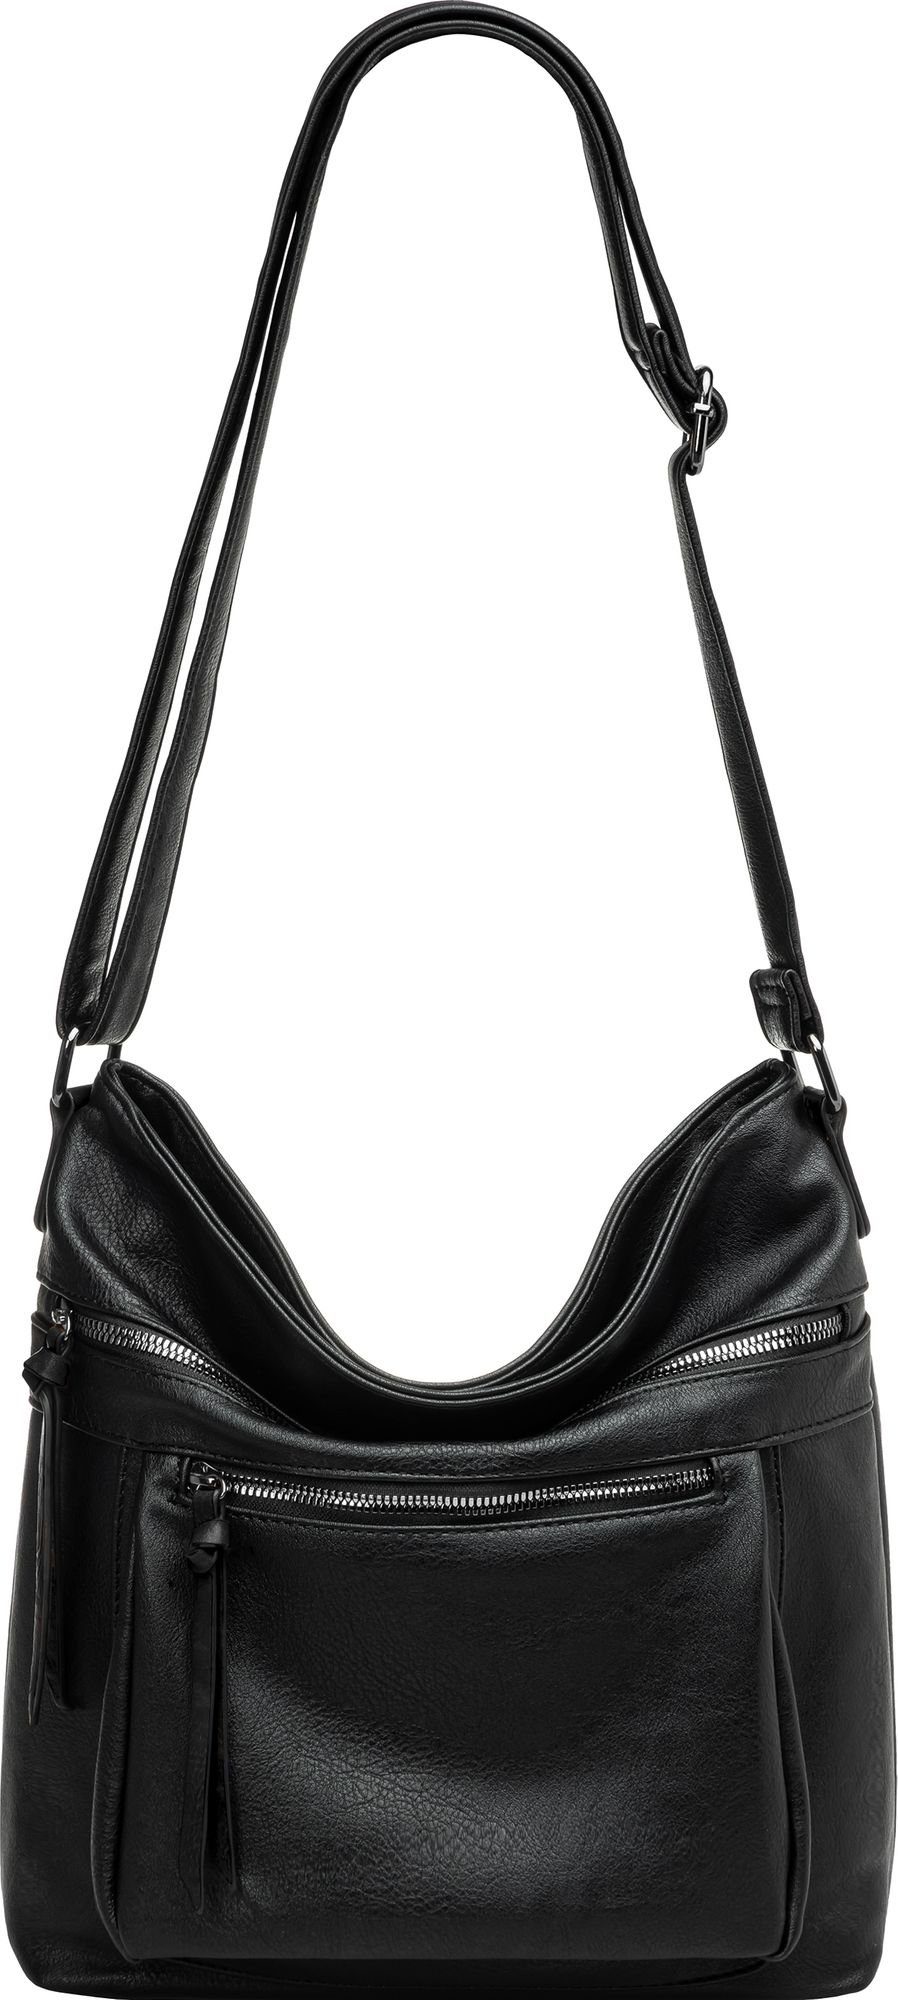 Caspar Umhängetasche TS1070 sportlich elegante mittelgroße Damen Crossbody Bag Umhängetasche schwarz